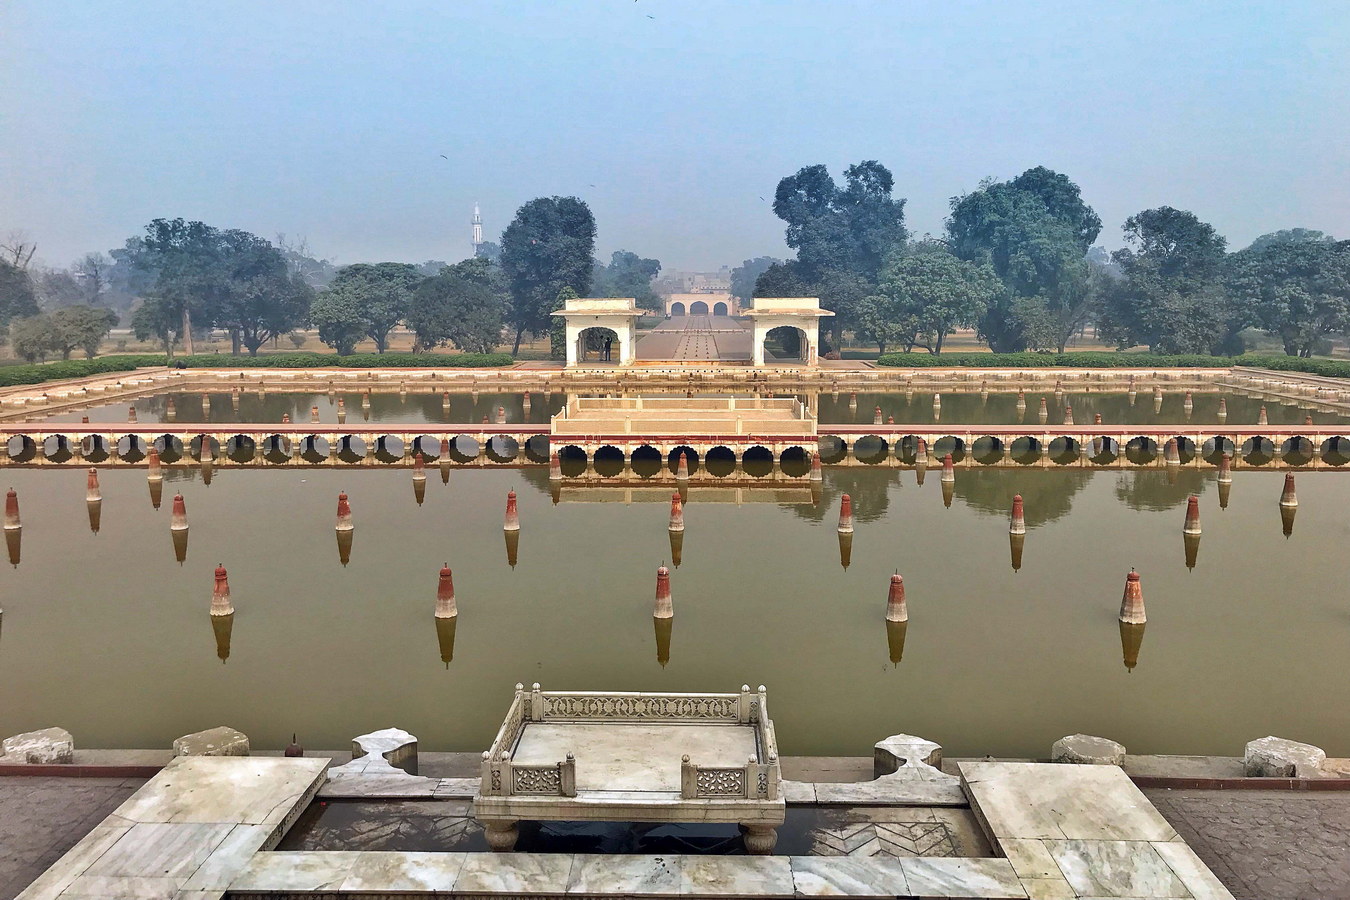 Chùm ảnh: Khu vườn thượng uyển cổ xưa đẹp nhất vương quốc Mughal